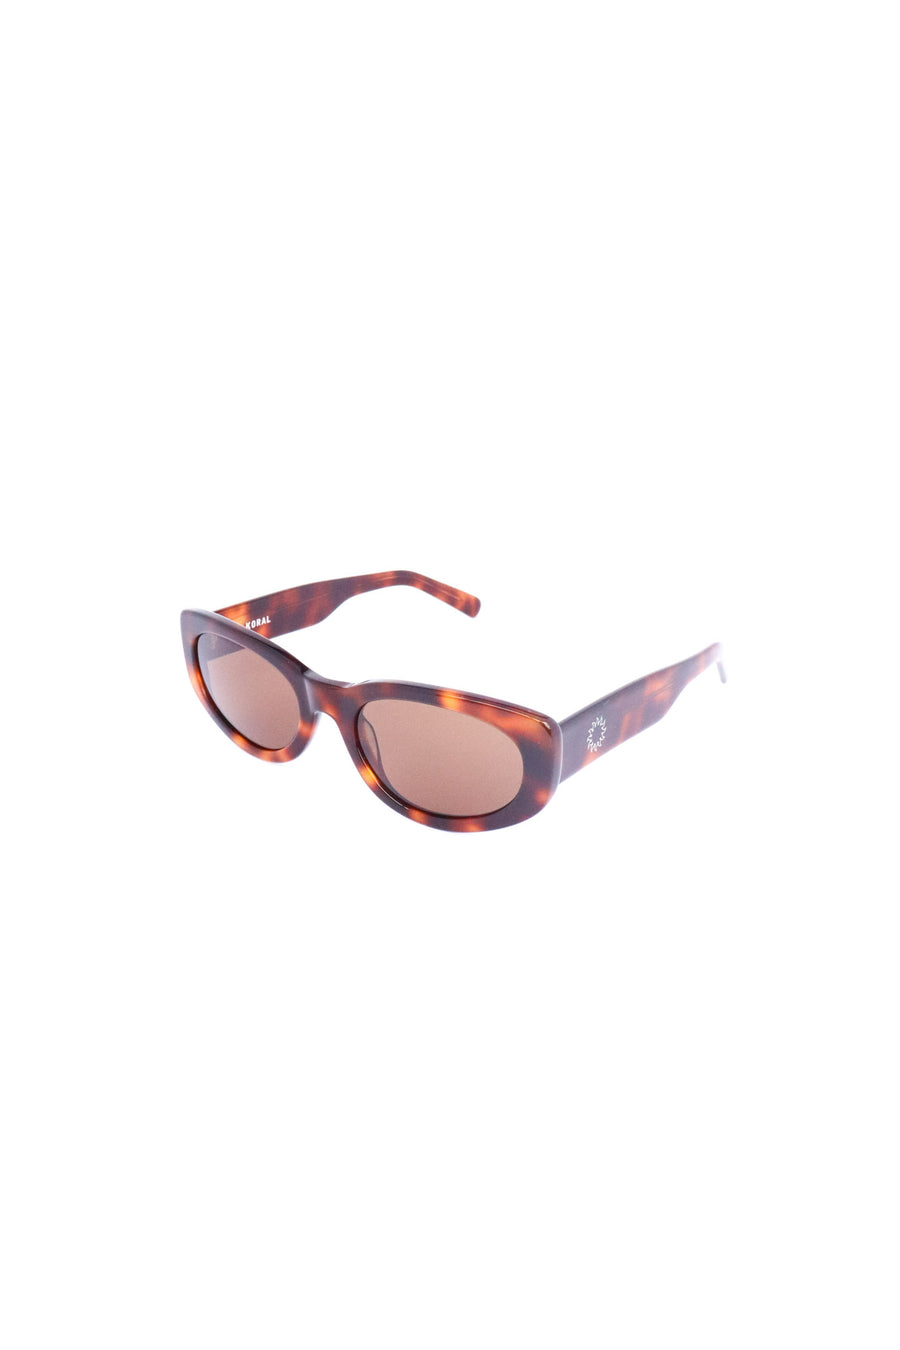 Avoir Eyewear - Koral in Tort - Sunglasses